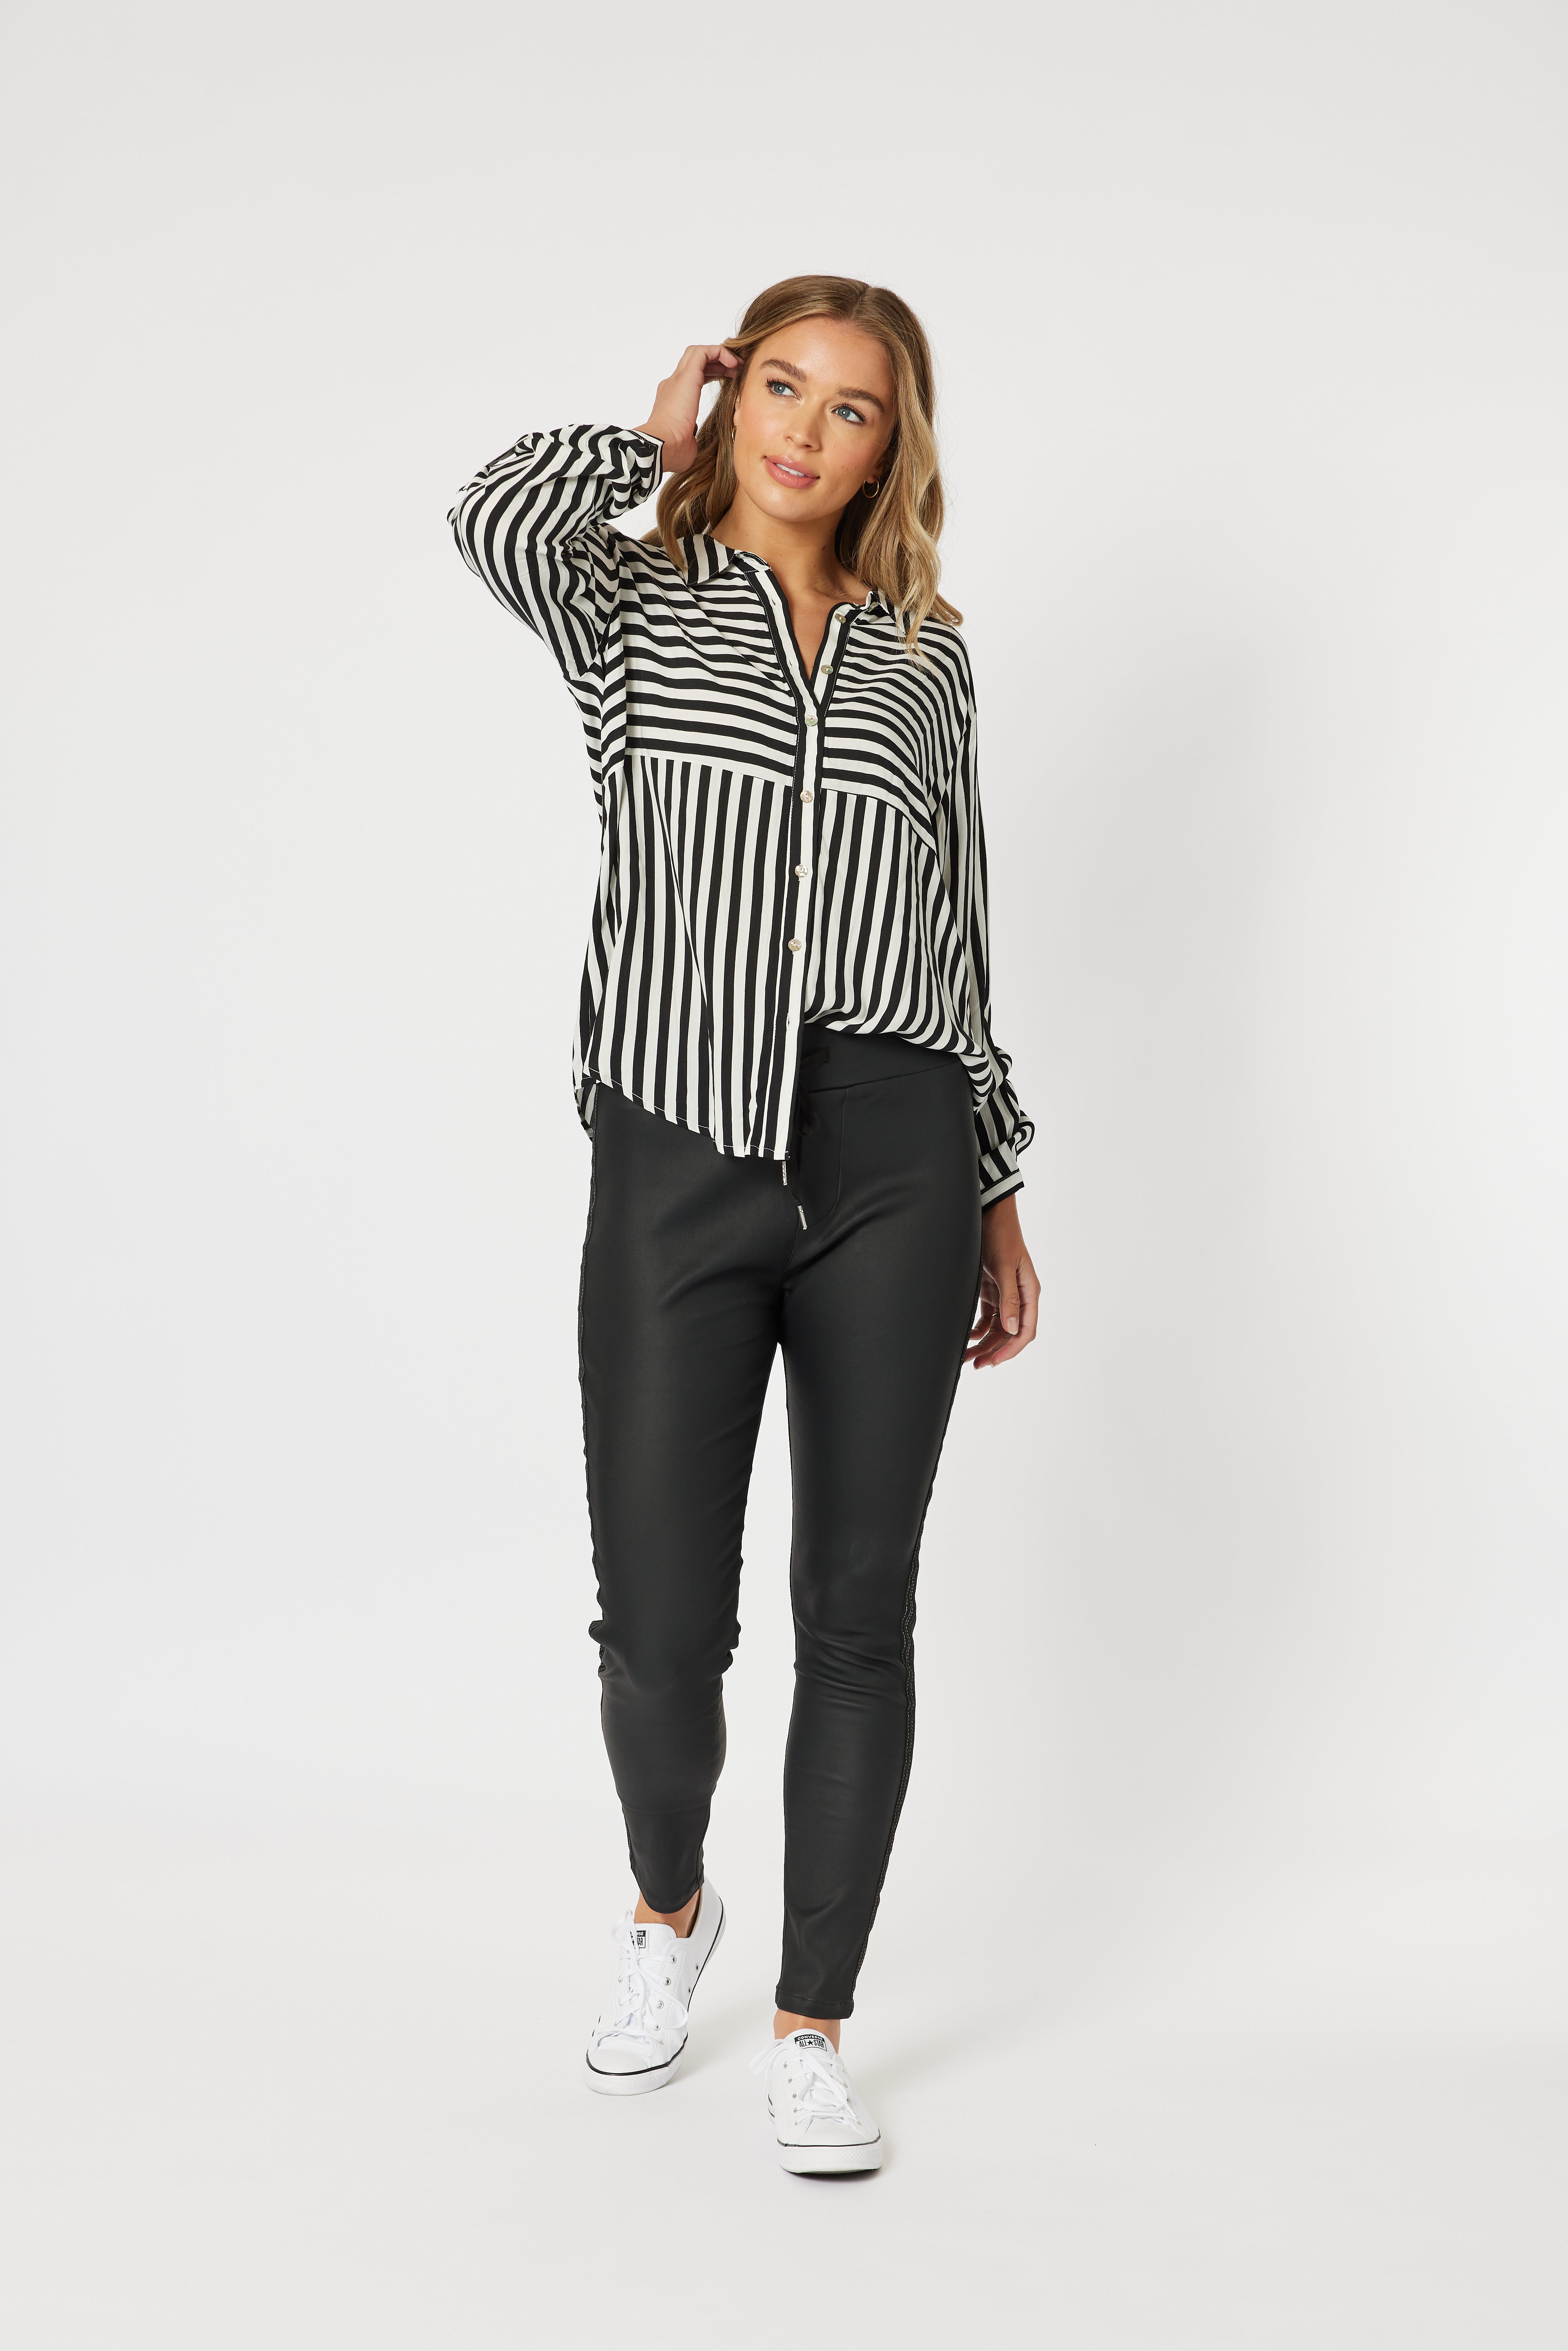 Threadz Tina Stripe Shirt - Black/White